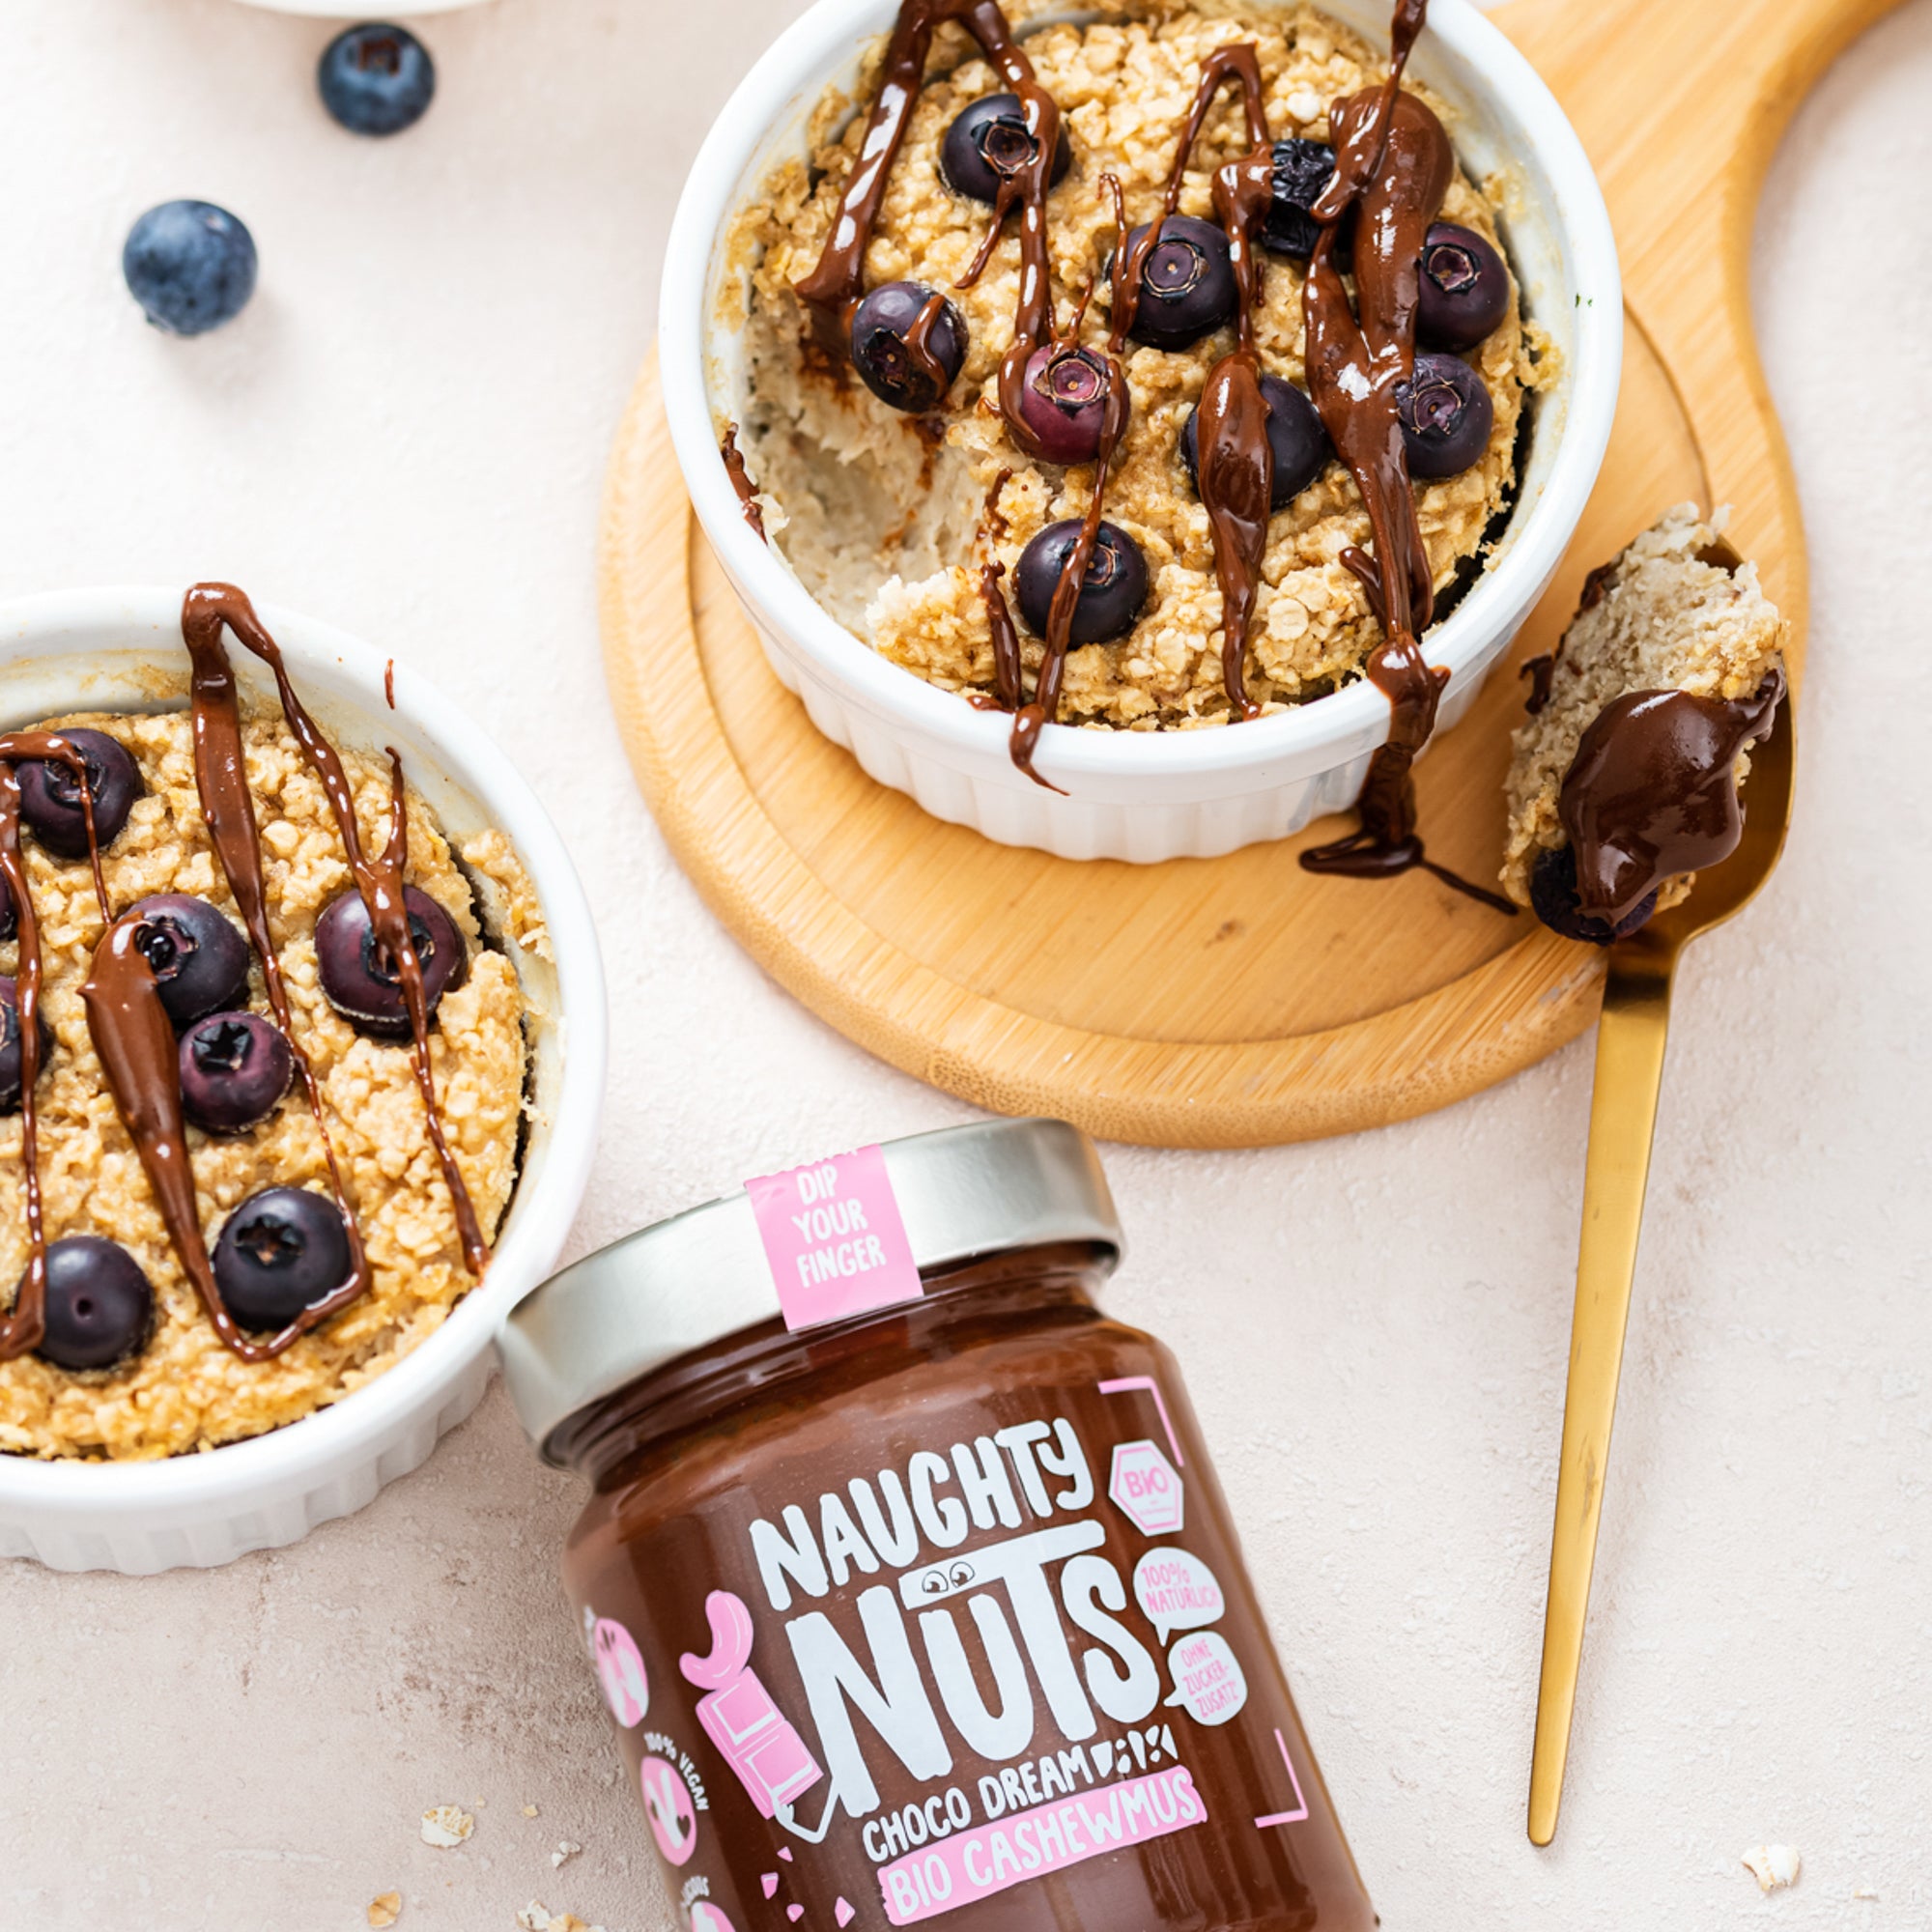 Vegane Baked Oatmeals mit Naughty Nuts BIO Cashewmus Choco Dream